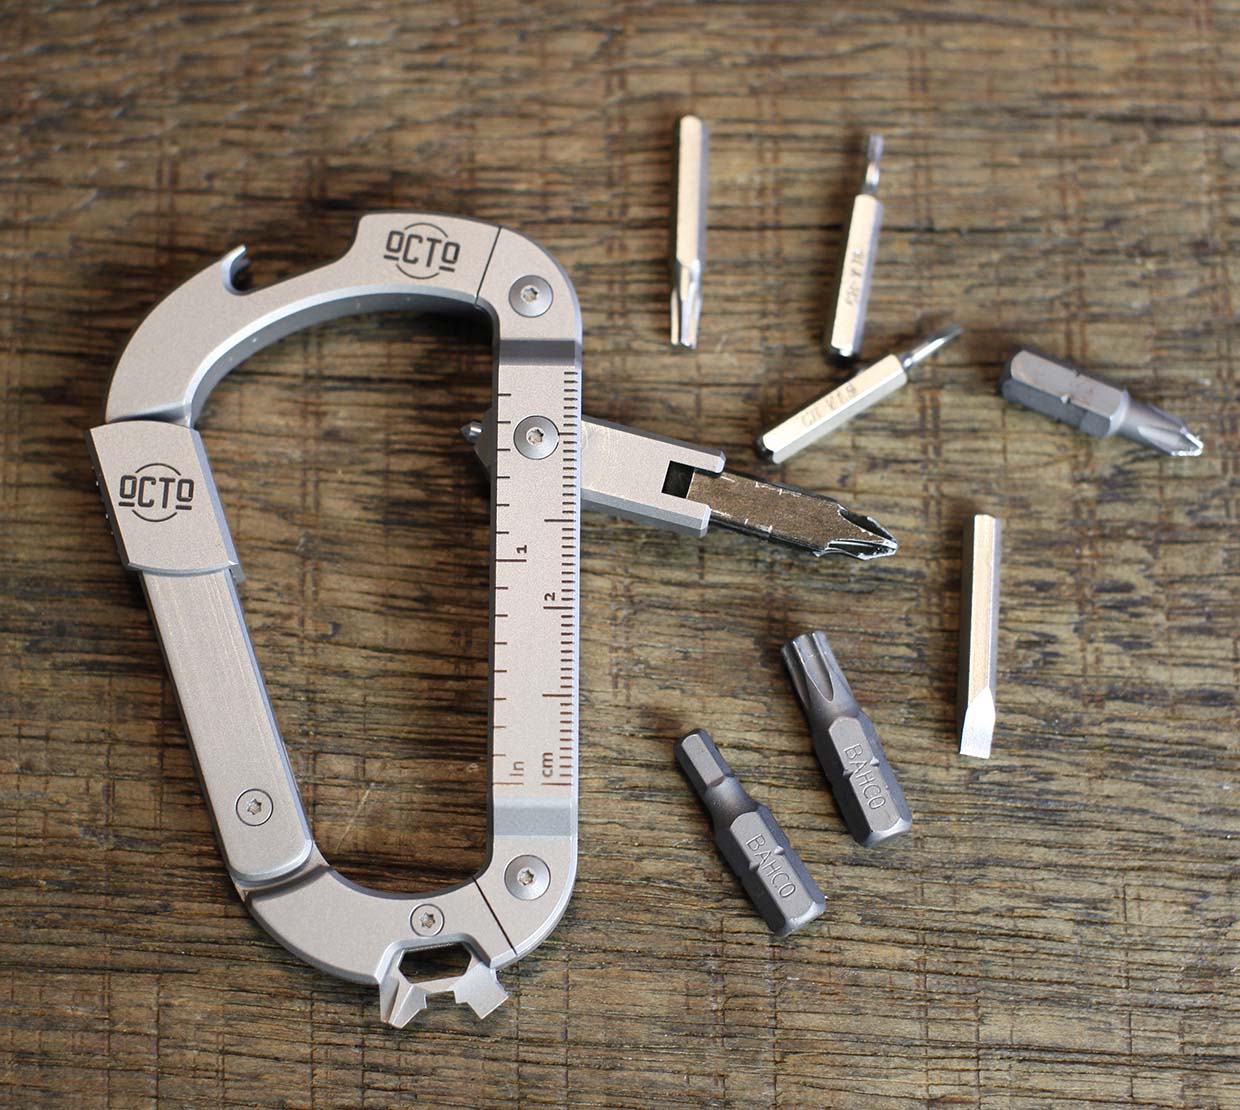 12992円 国内初の直営店 KeyUnity KU02 Titanium EDC 7 in 1 Multi-tool Carabiner Keychain Wrench